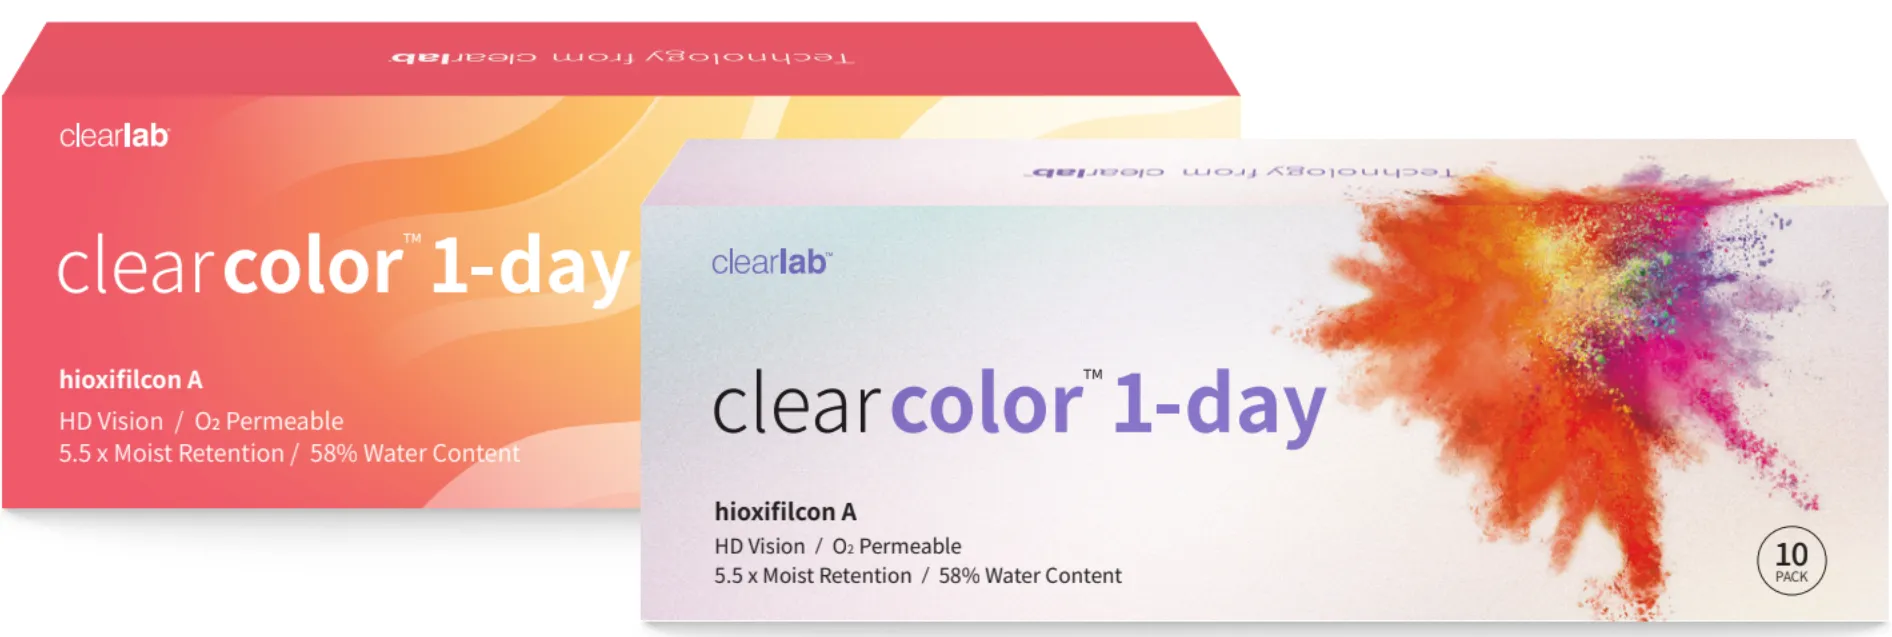 ClearLab ClearColor 1-Day kolorowe soczewki kontaktowe szare -5,00, 10 szt.